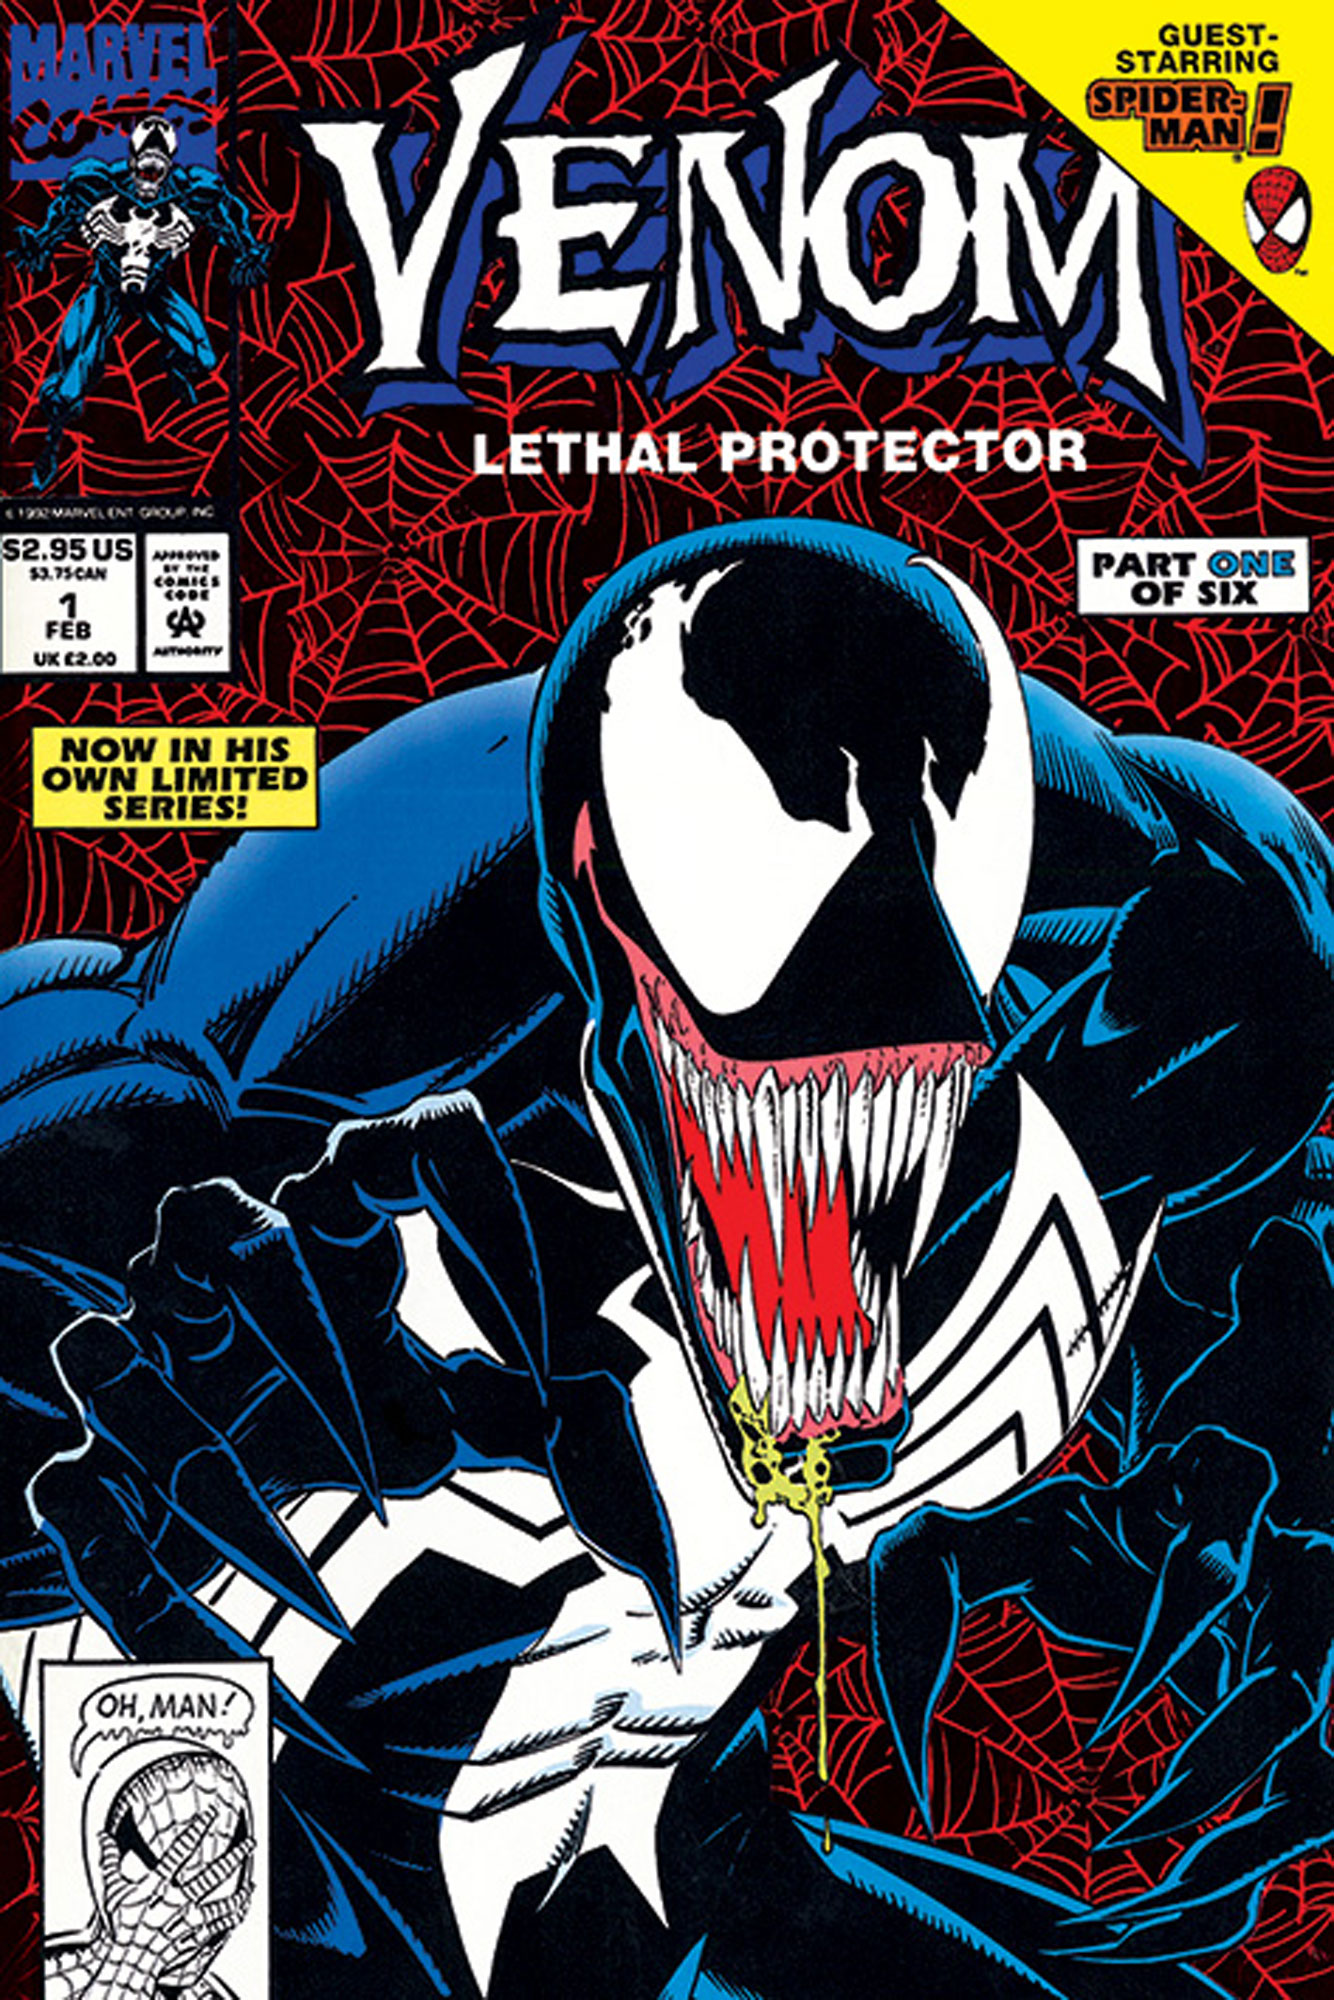 Marvel - Venom - Lethal 1 Part Protector